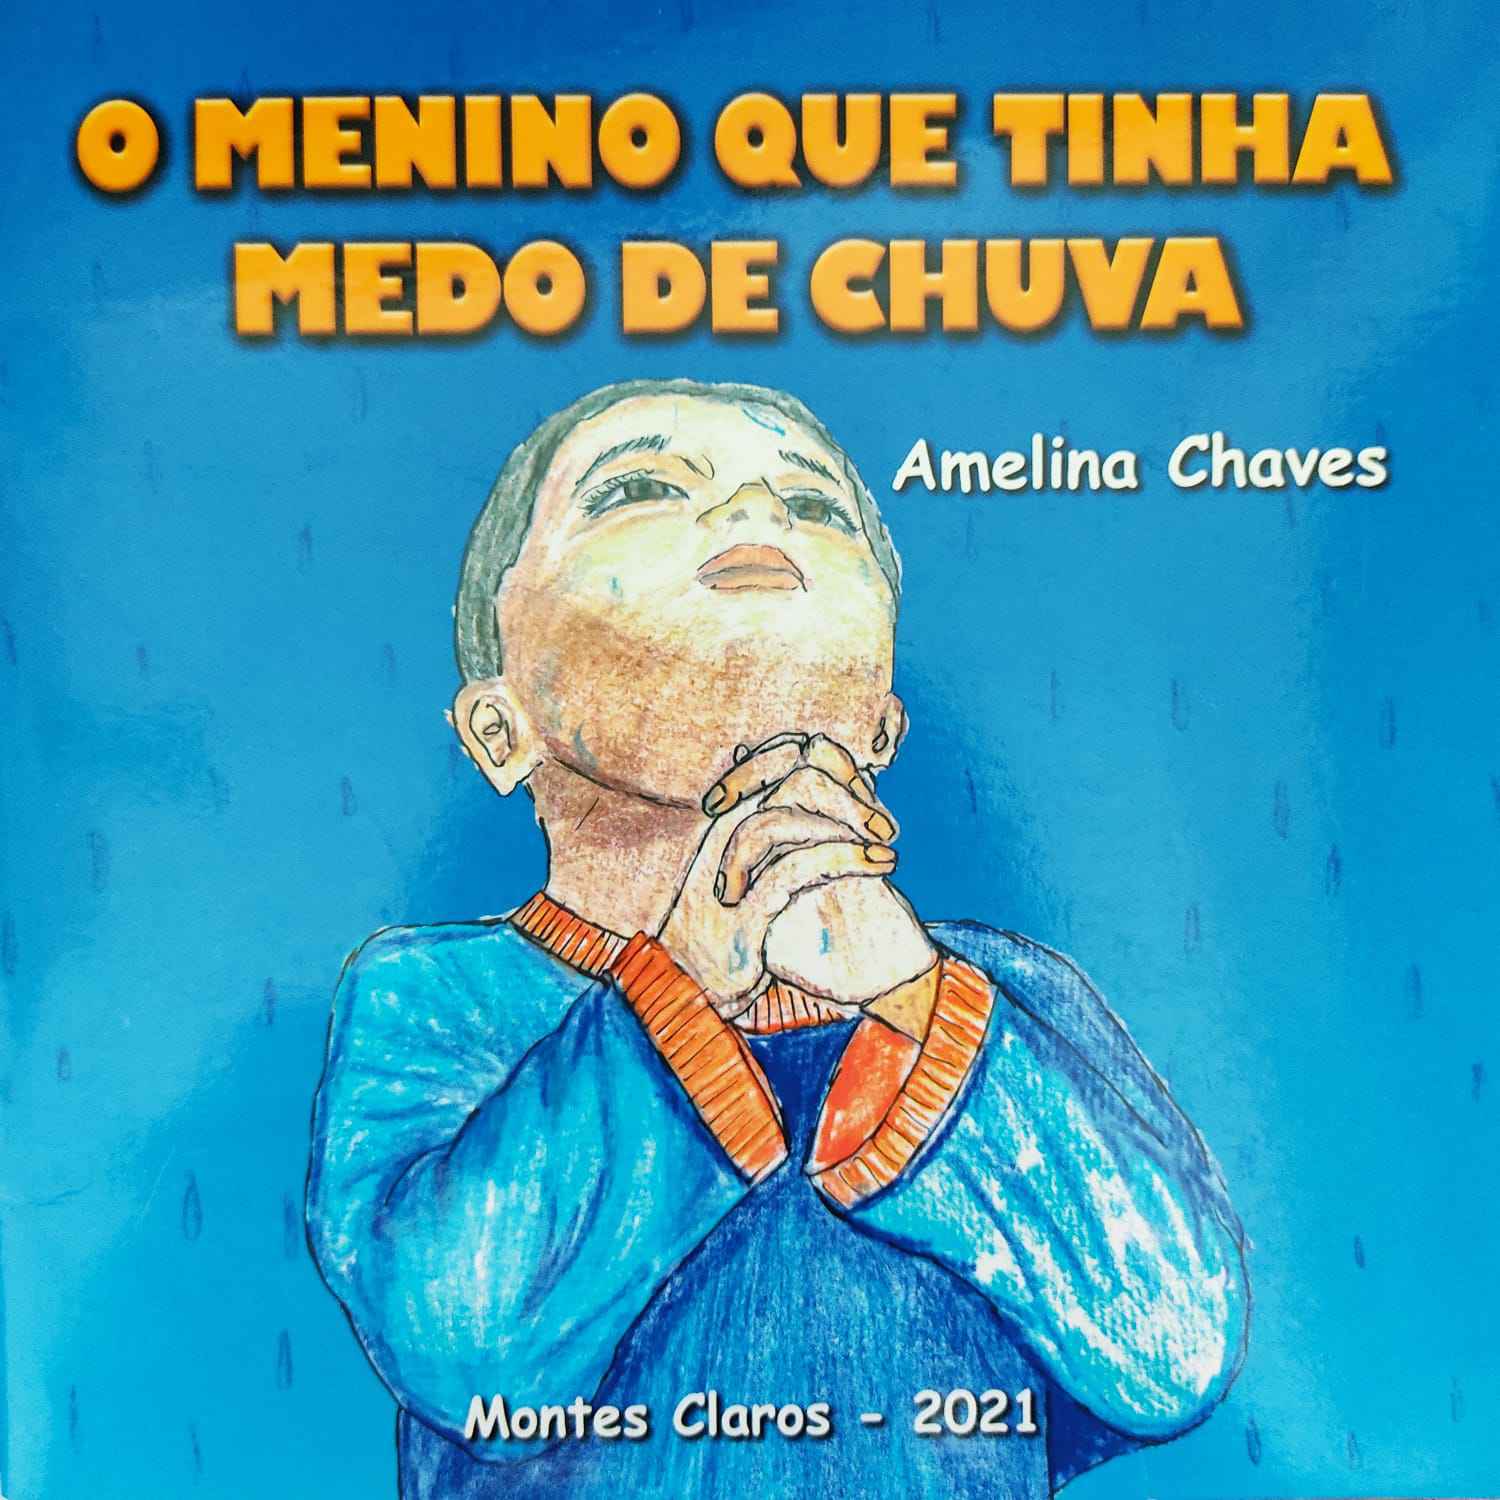 'O menino que tinha medo de chuva' é lançado no mês em que Amelina Chaves completa 90 anos de vida